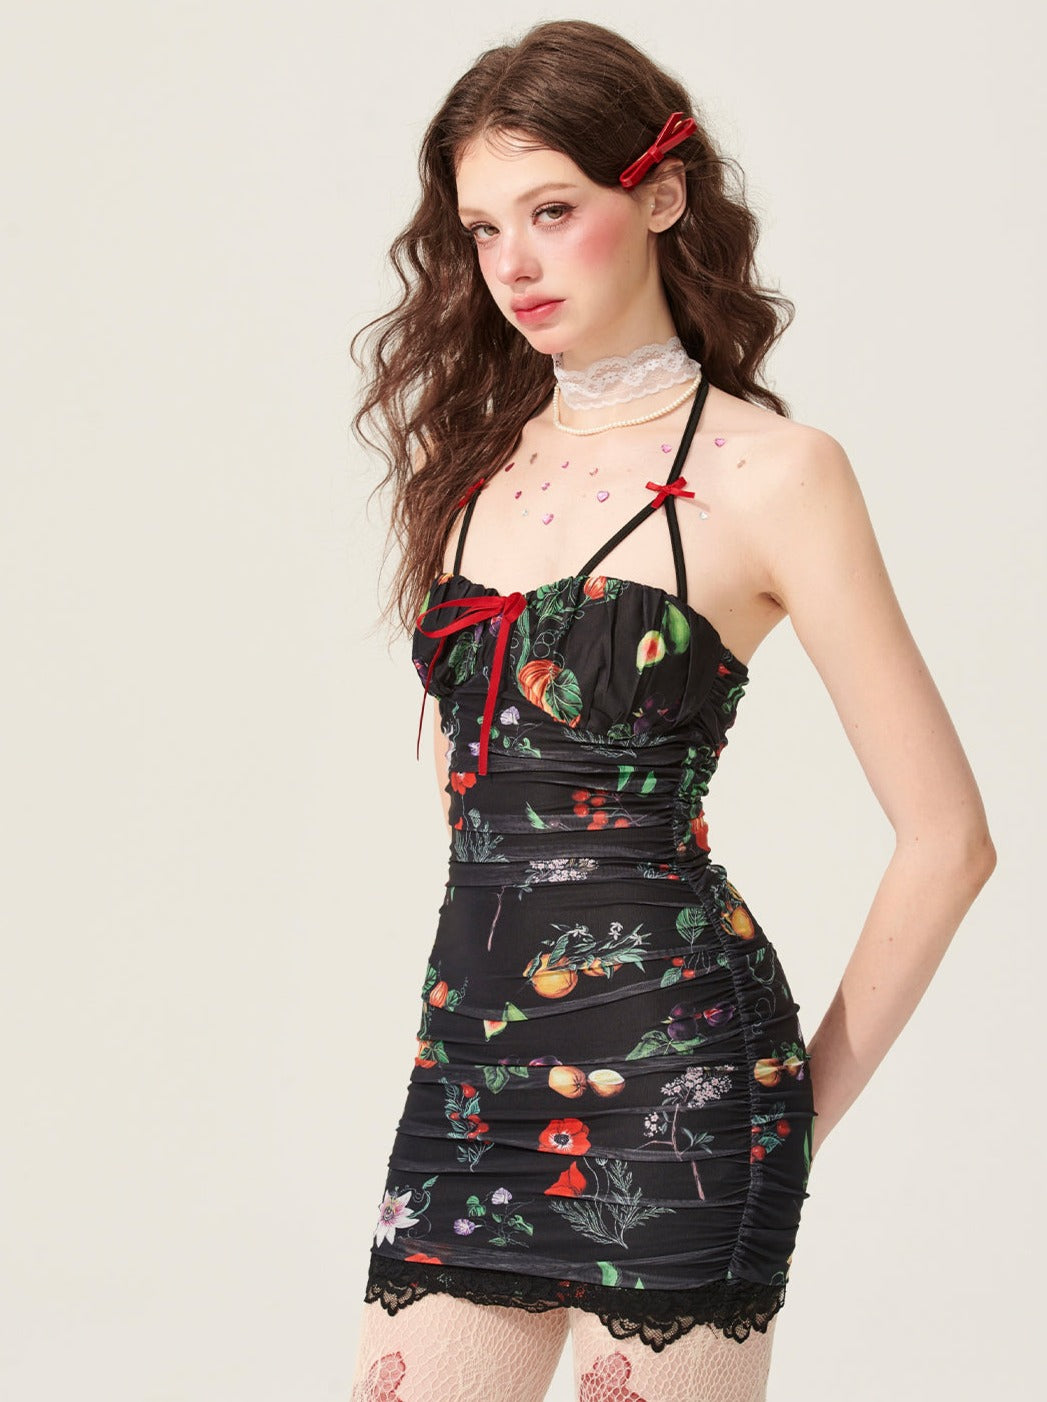 5월 31일 오후 8시 판매】쇼예안 시크릿 가든 블랙 플로럴 슬립 드레스 썸머 스커트